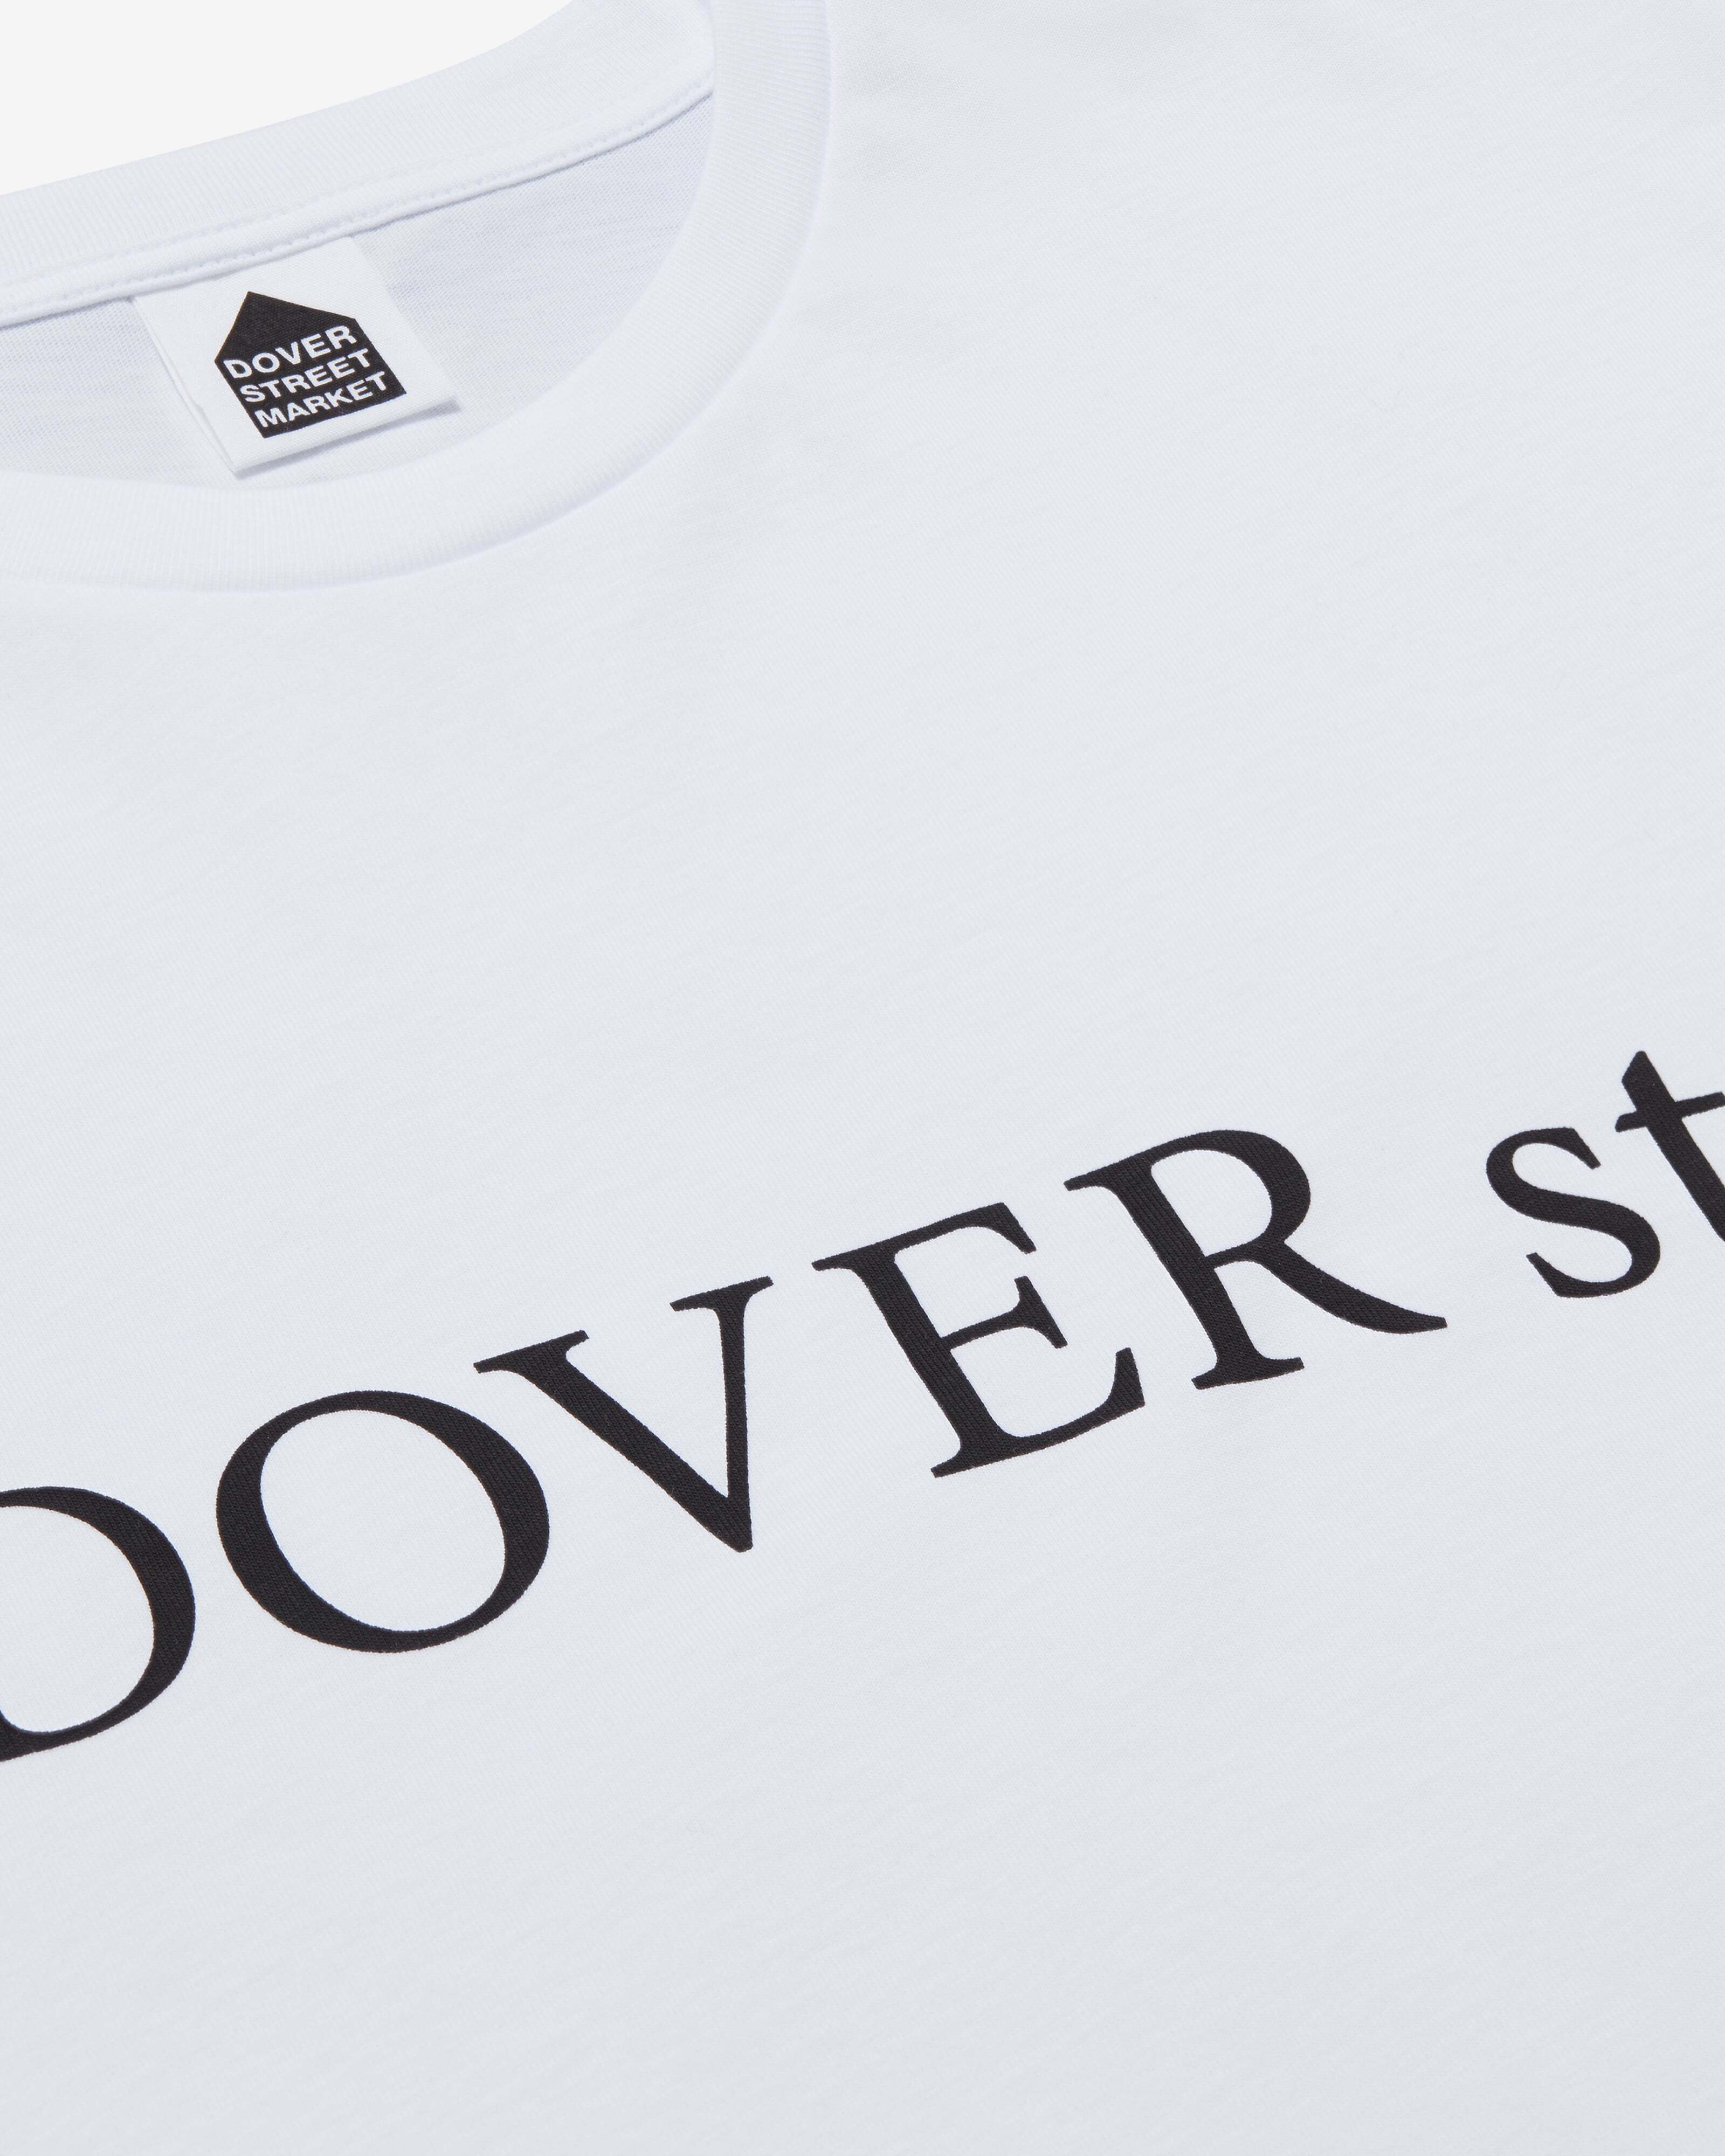 Fragment - TableTop DSM:FRGMT Dover St. T-Shirt - (White)